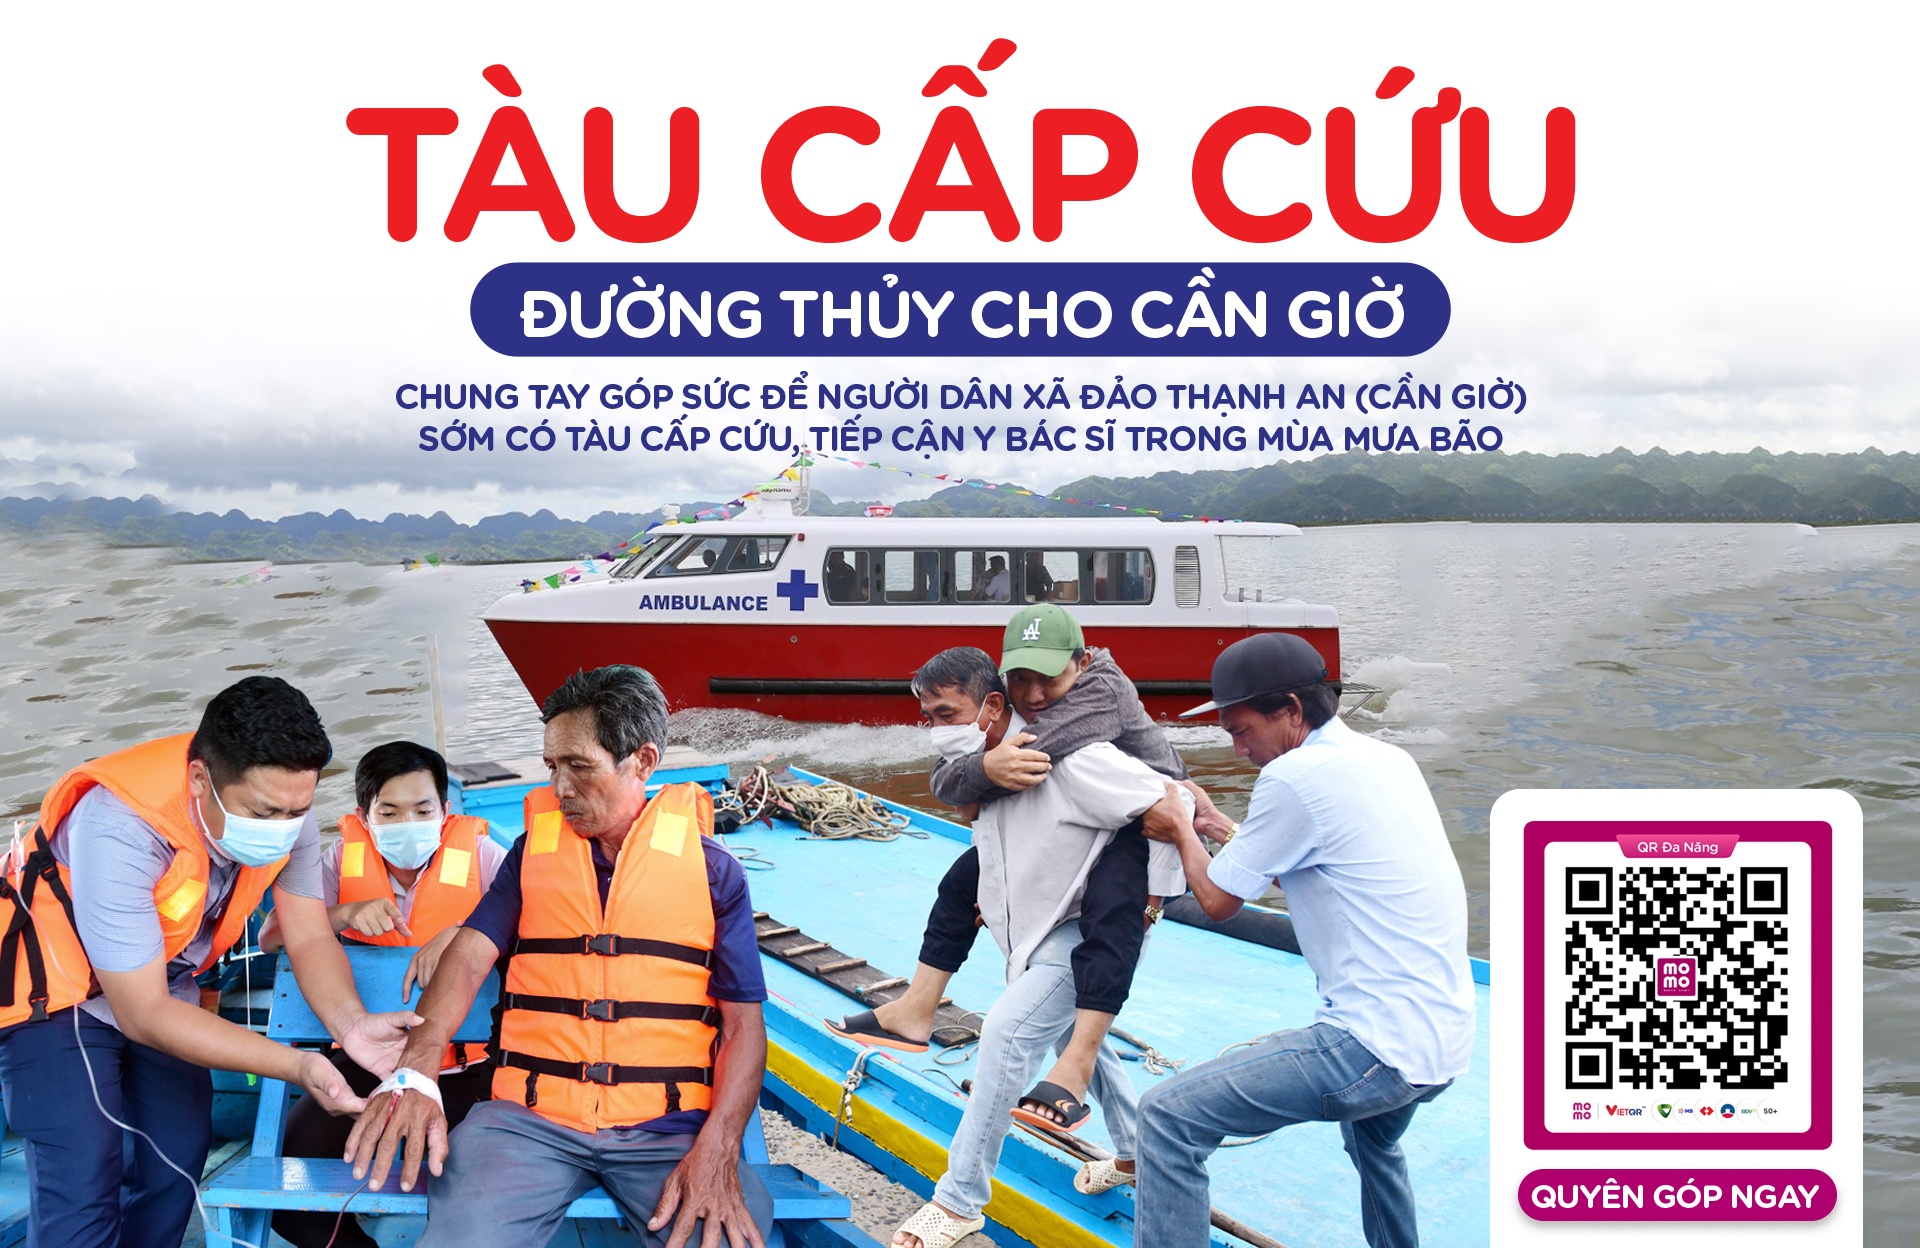 MoMo kêu gọi các nhà hảo tâm chung tay giúp người dân xã đảo Thạnh An (huyện Cần Giờ, TP Hồ Chí Minh) sớm có tàu cấp cứu, tiếp cận y bác sĩ trong mùa mưa bão 